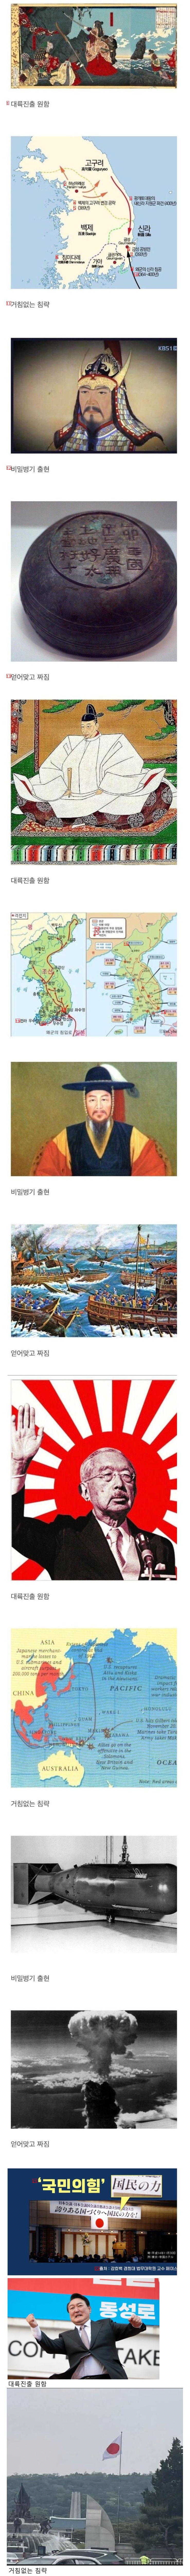 반복되는 일본 역사.jpg